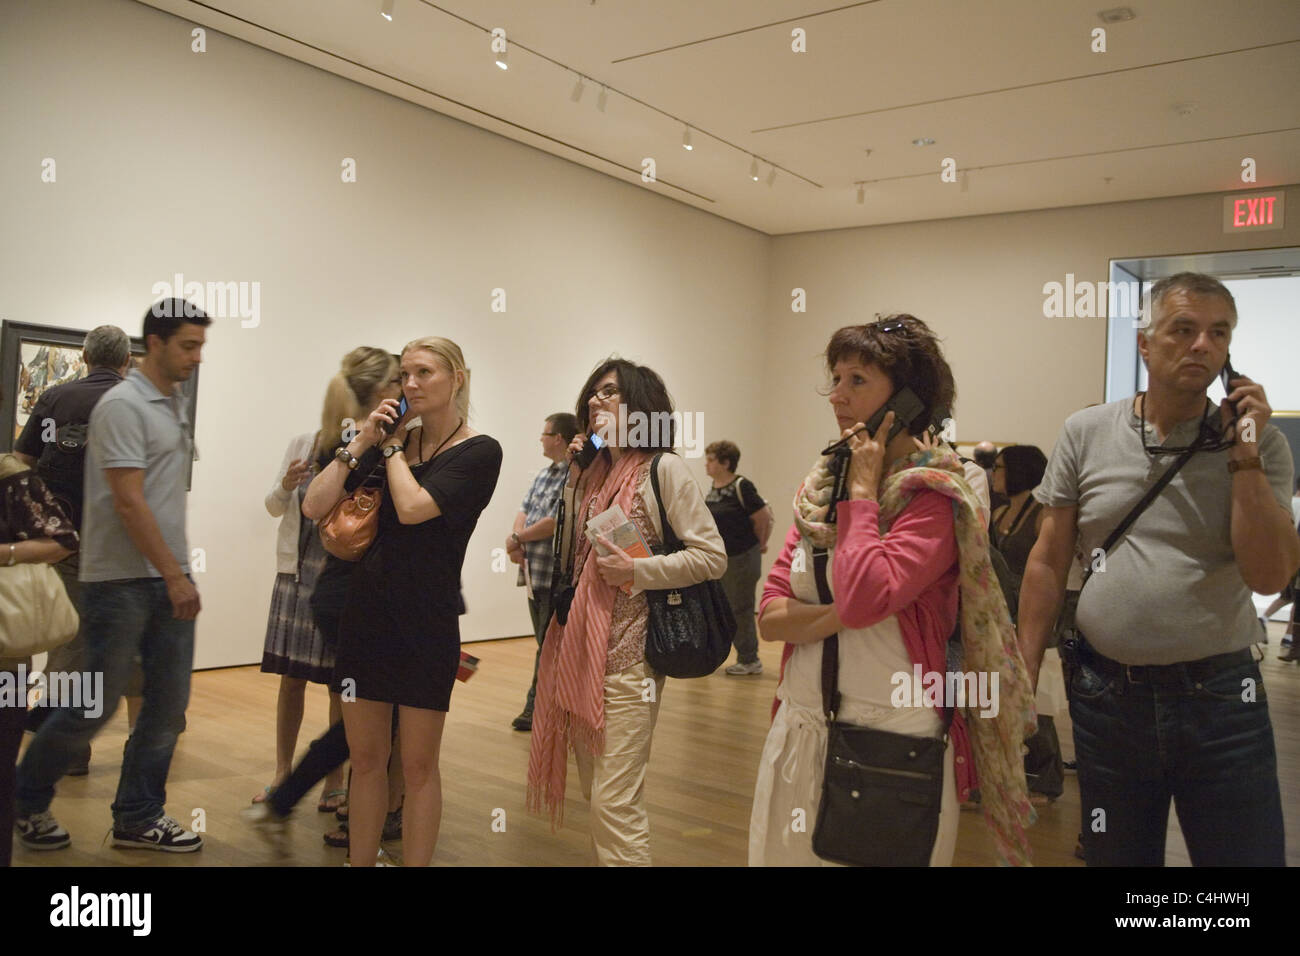 Selbst geführte Audio-Touren sind sehr beliebt bei den Besuchern in Museen wie dem Museum Of Modern Art (MOMA) abgebildet. Stockfoto